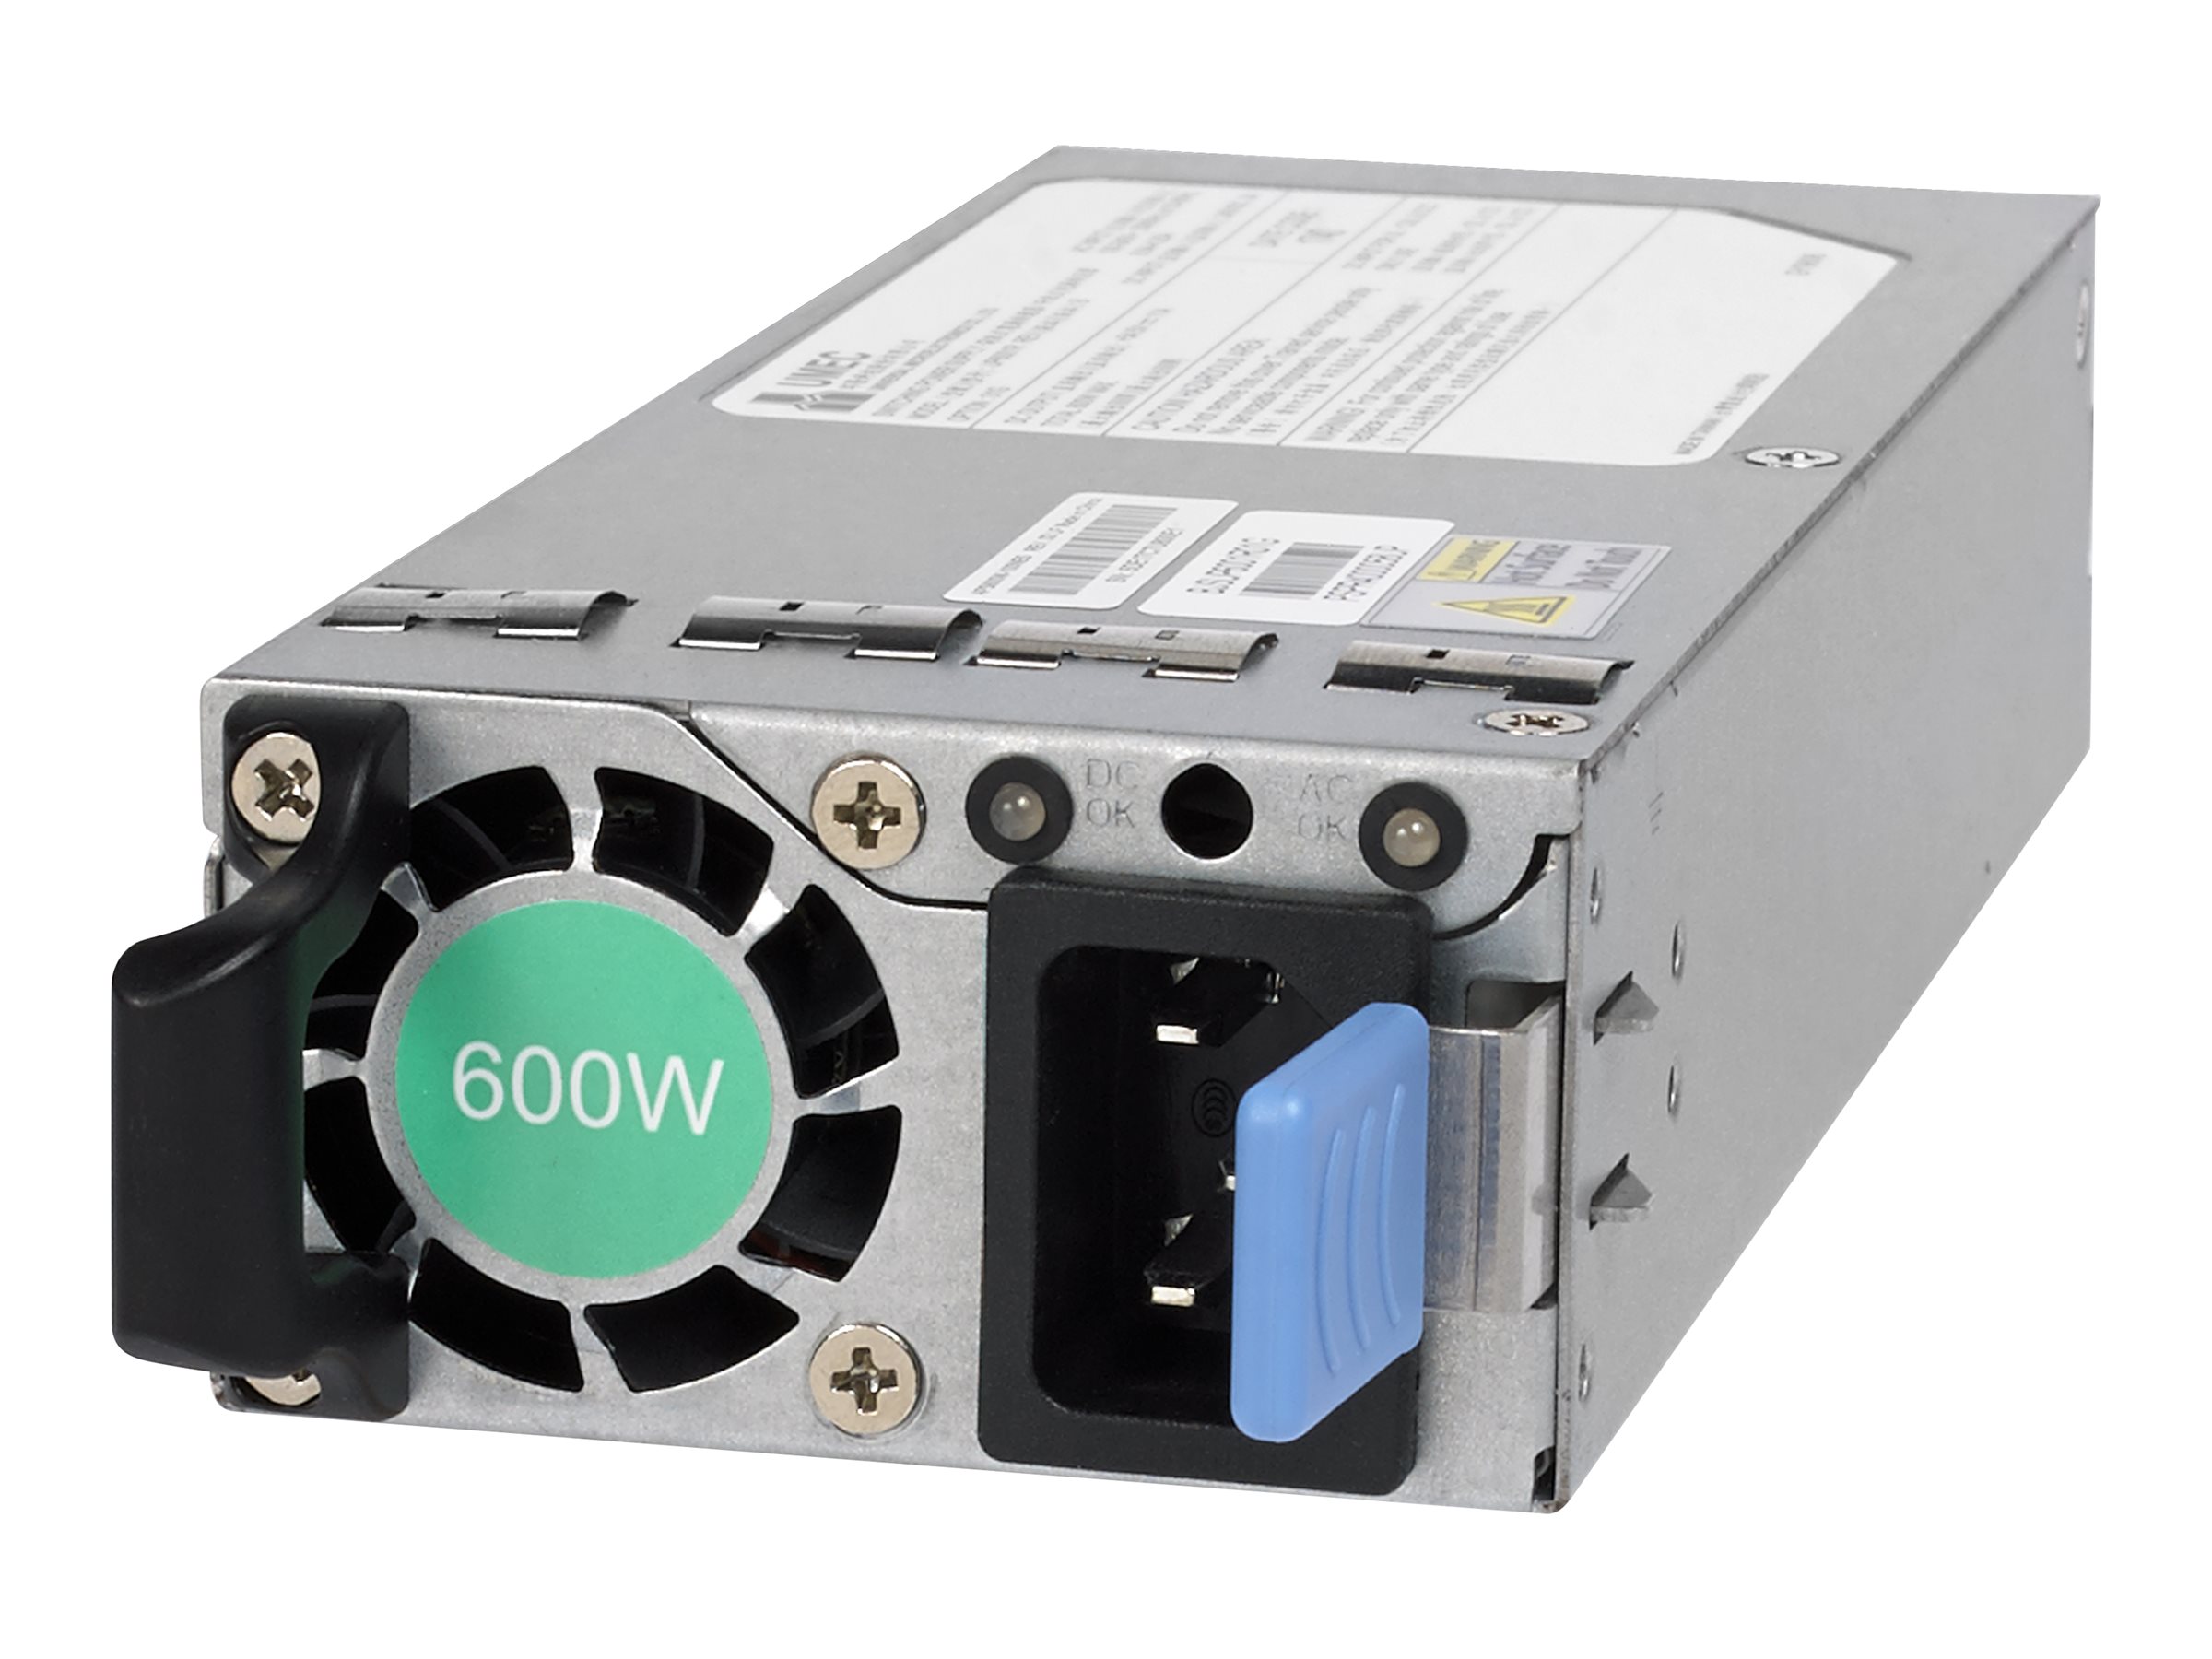 NETGEAR APS600W – Power supply